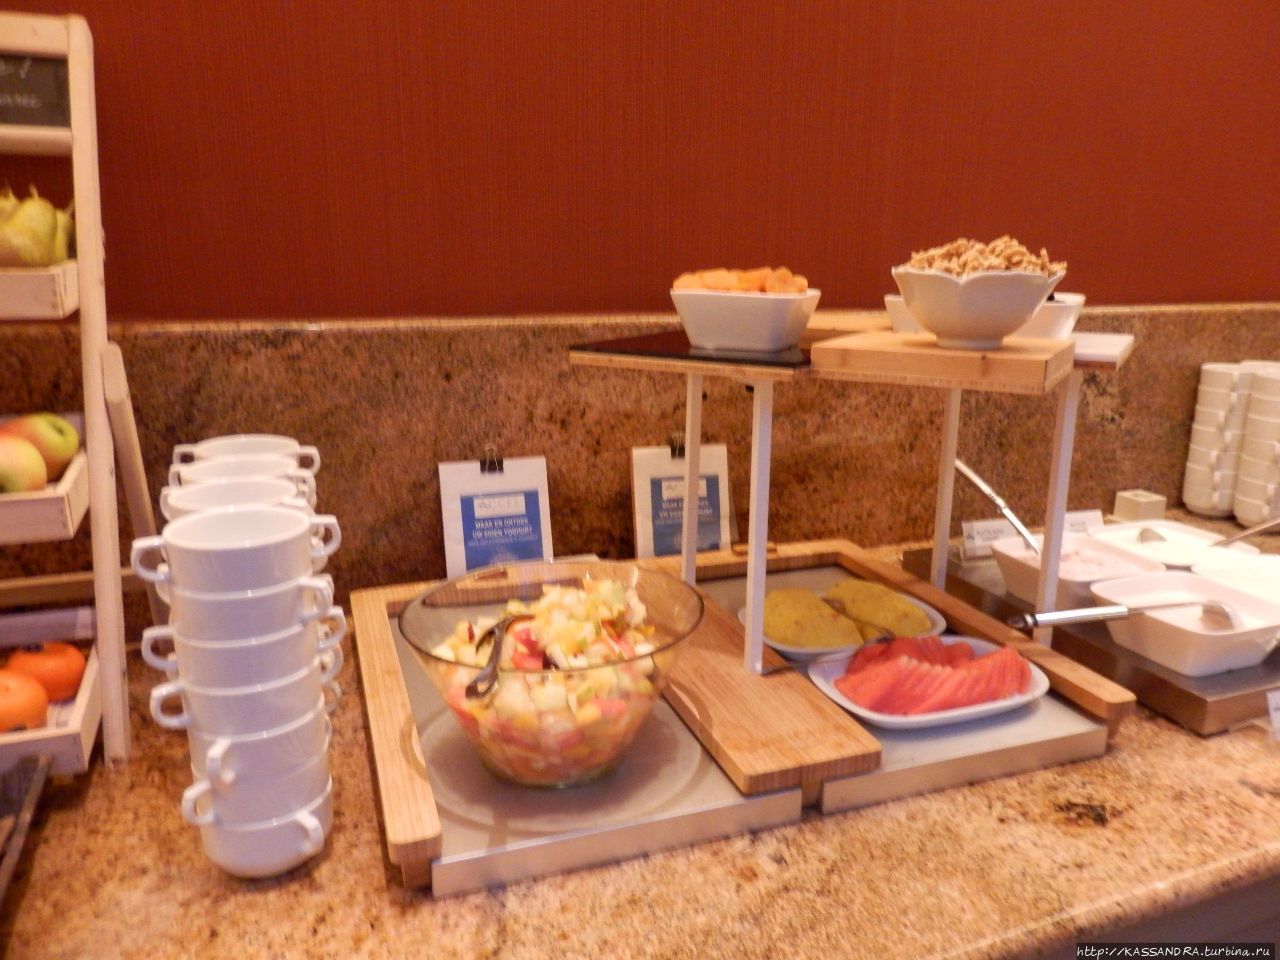 Бельгийский завтрак в отеле Остенде, Бельгия